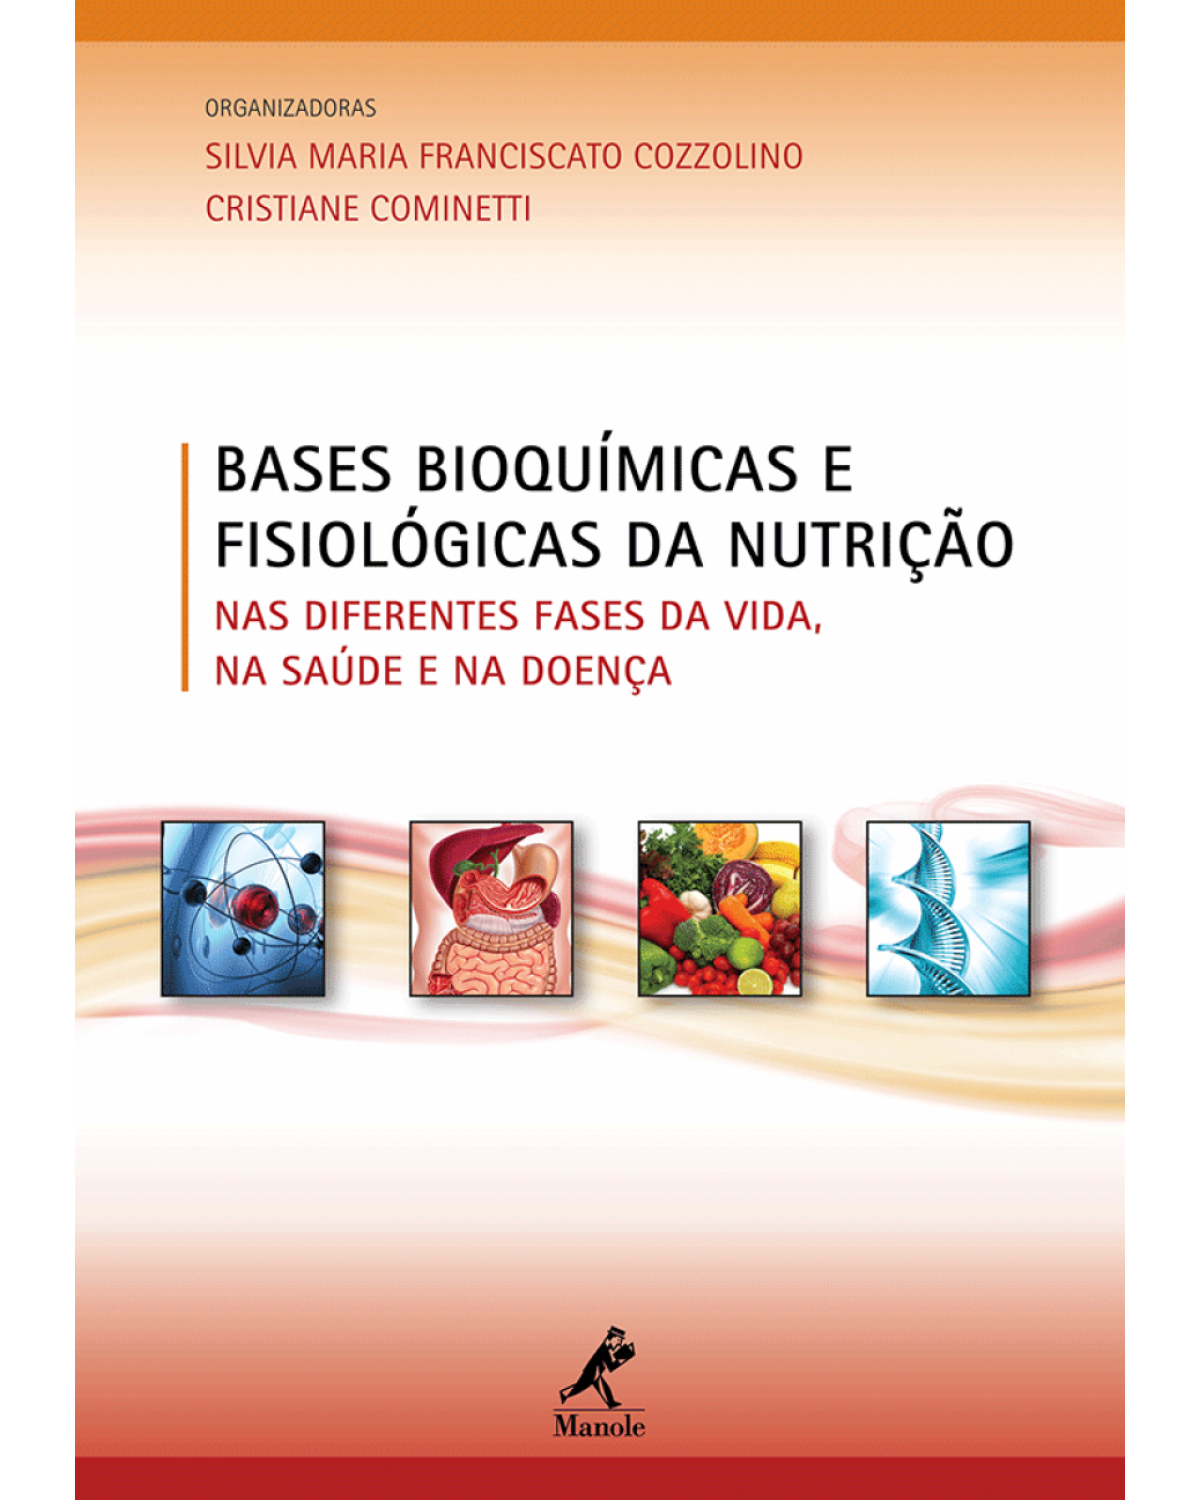 Bases bioquímicas e fisiológicas da nutrição - Nas diferentes fases da vida, na saúde e na doença - 1ª Edição | 2013